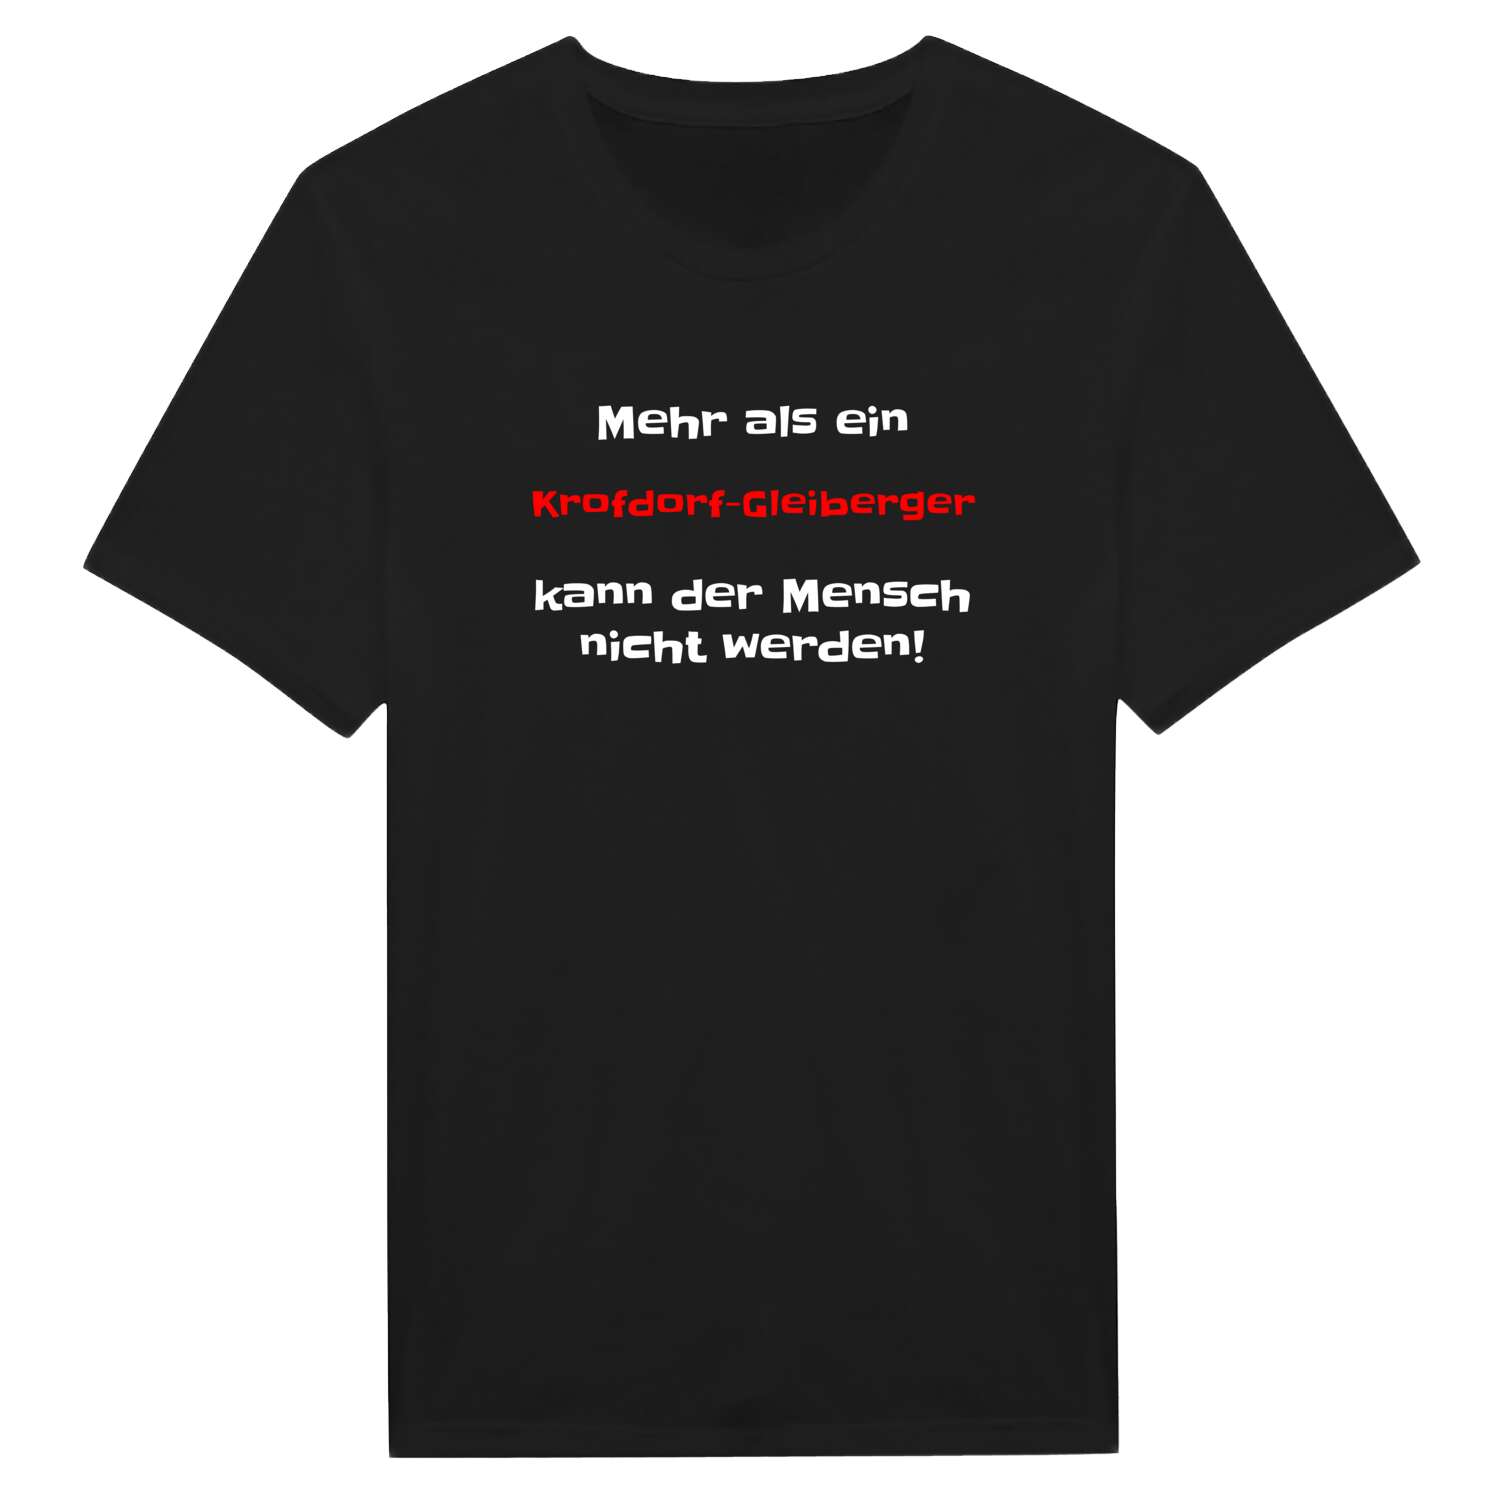 Krofdorf-Gleiberg T-Shirt »Mehr als ein«